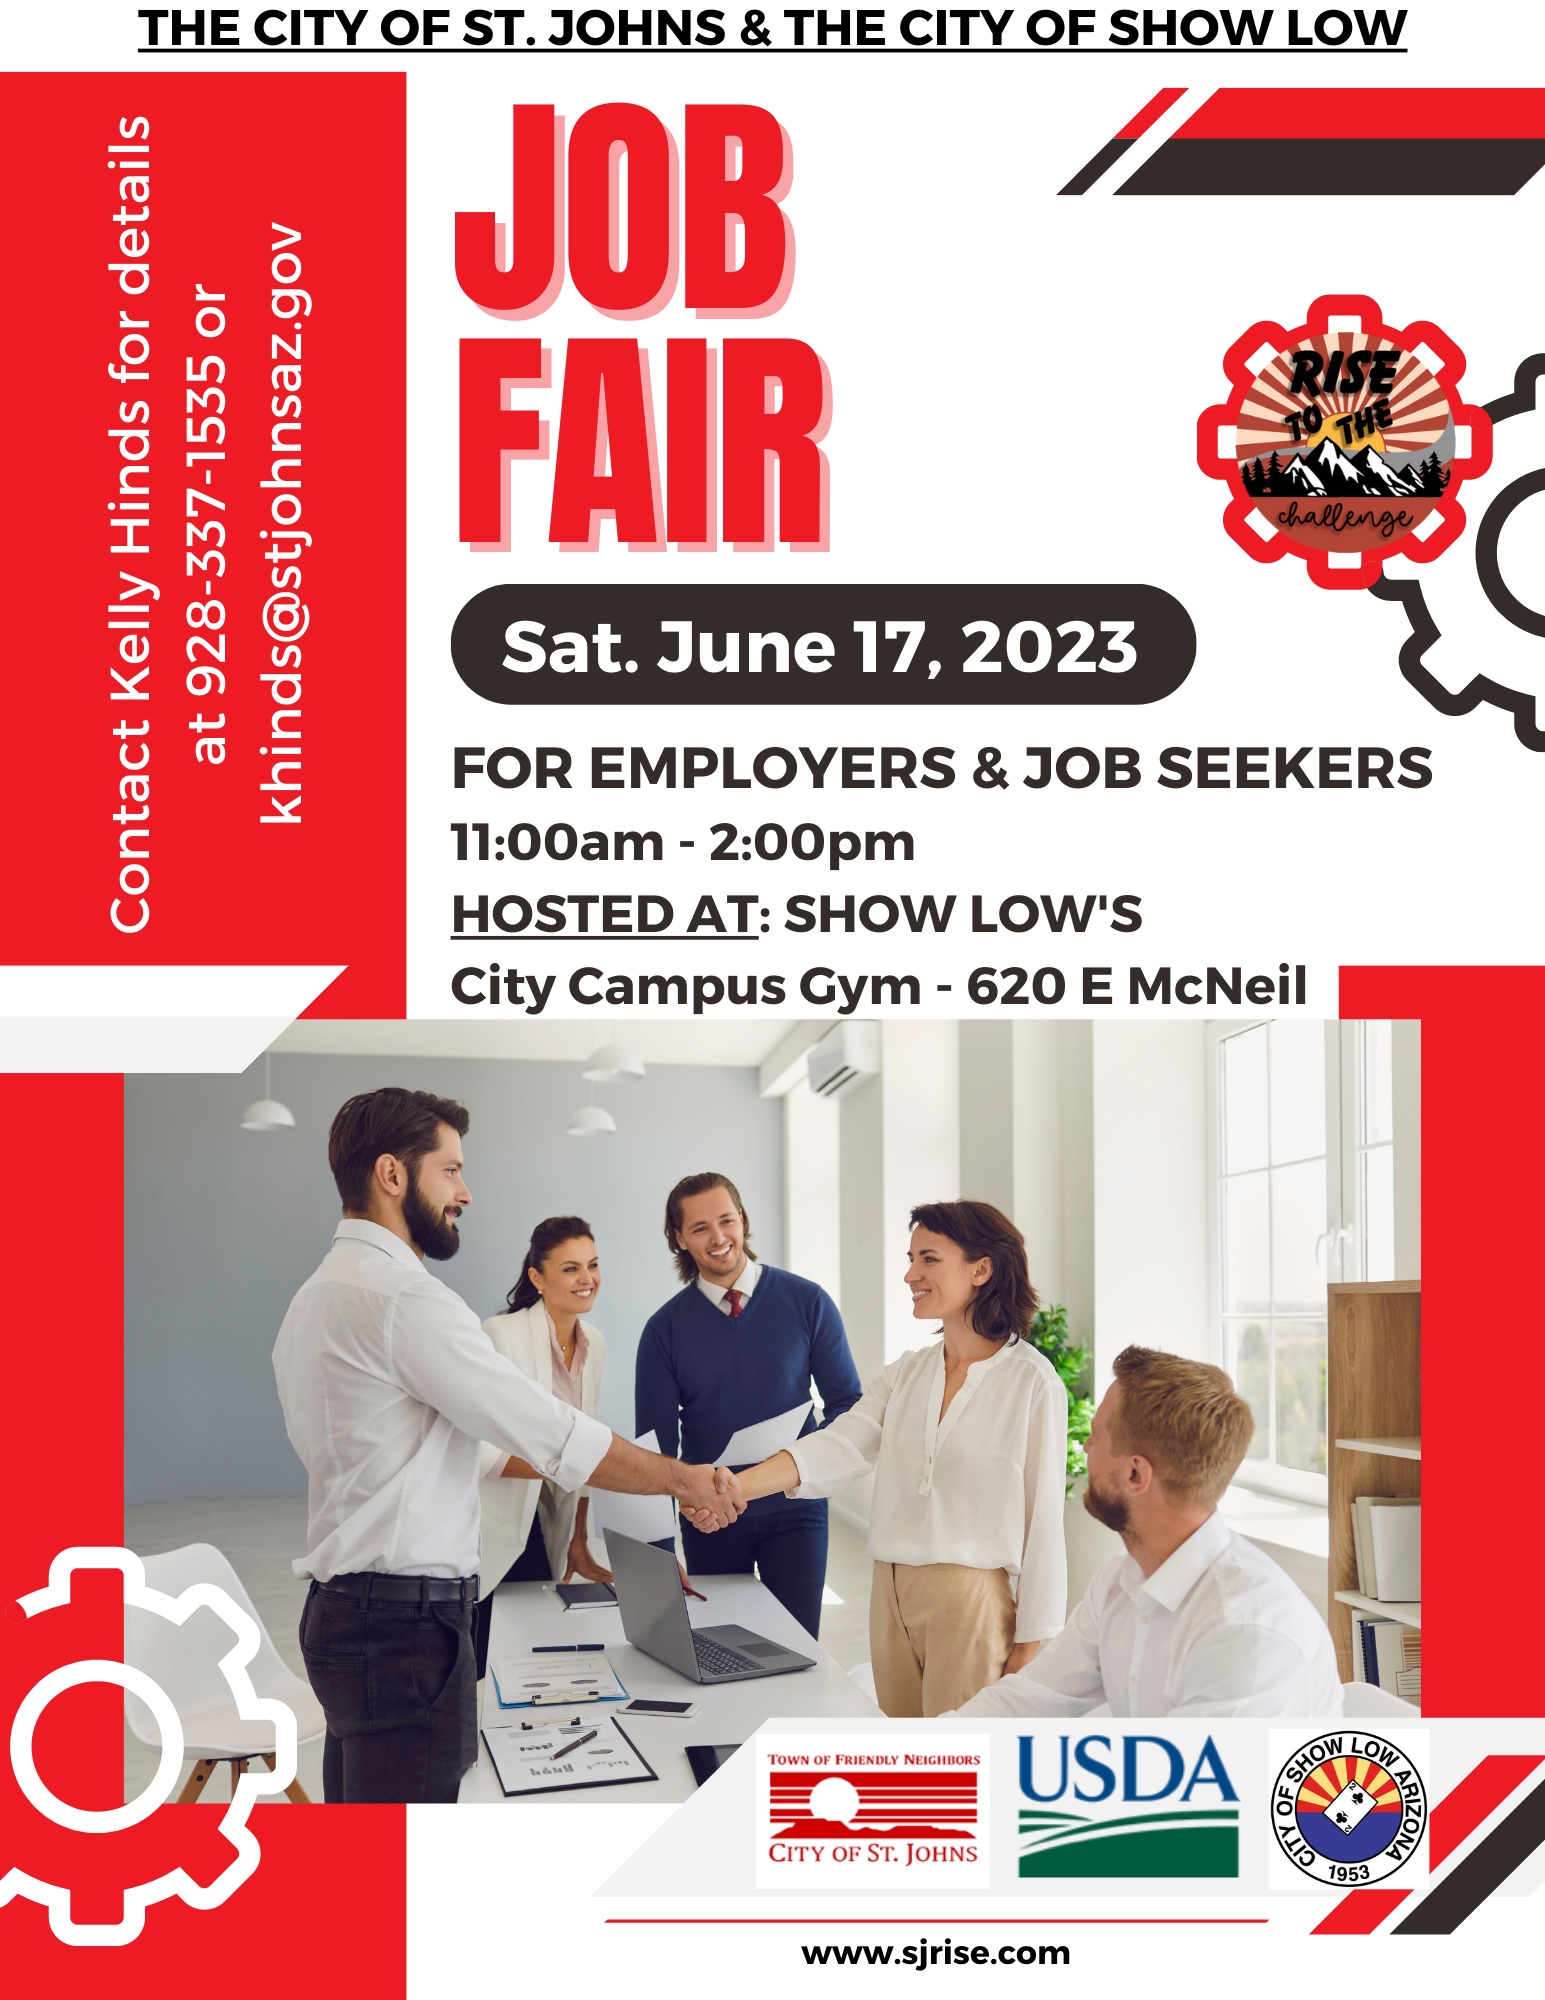 Job fair 2023 flyer JUNE 17, 2023